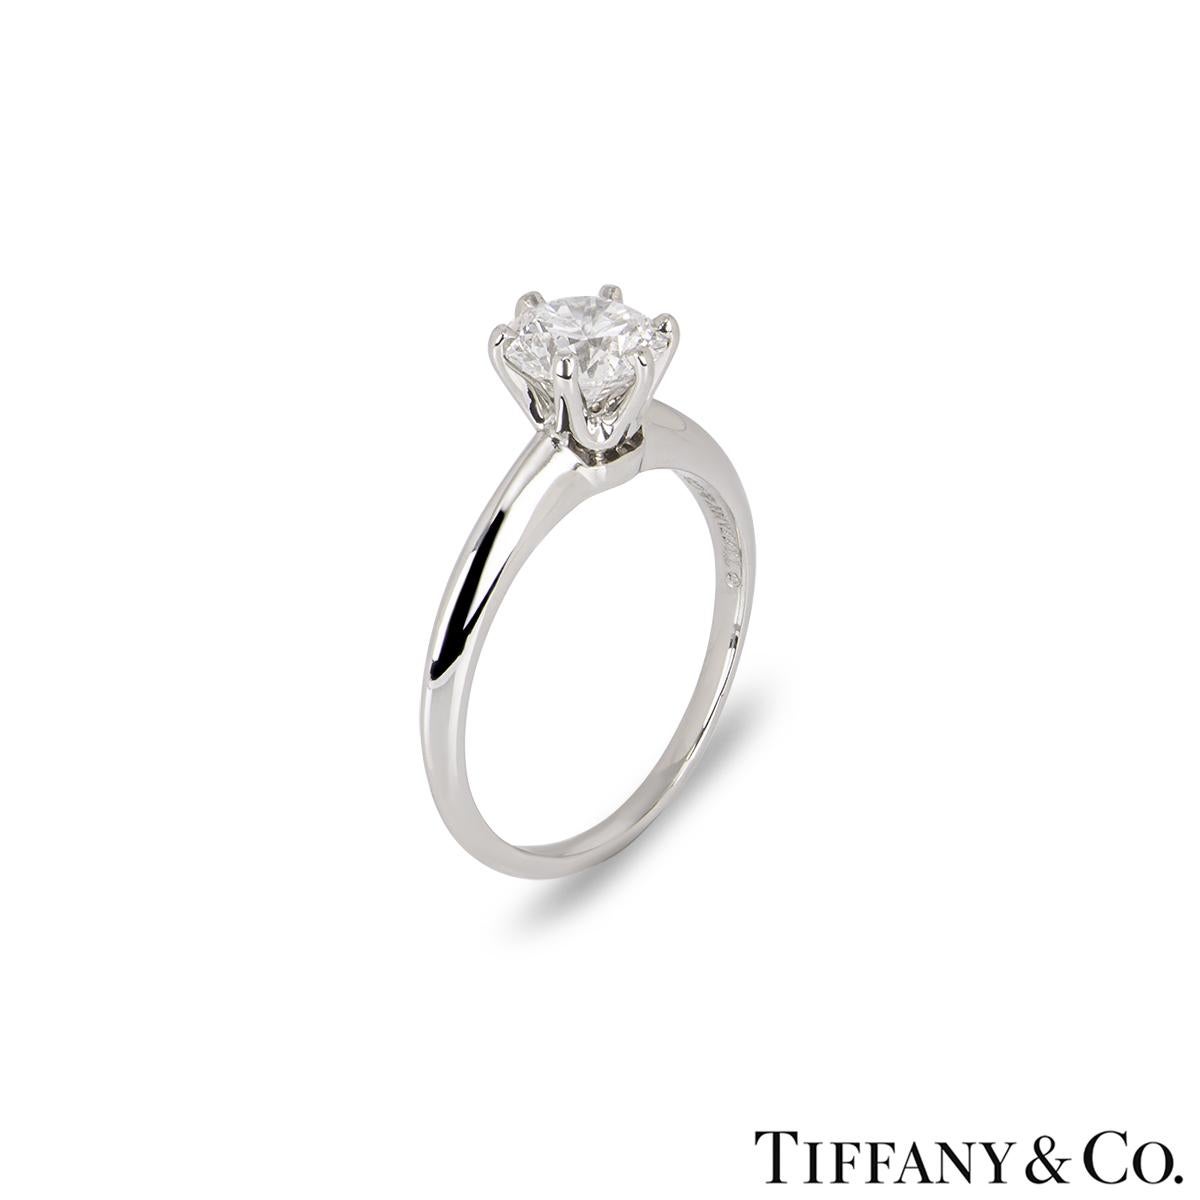 Ein atemberaubender Solitär-Diamantring aus Platin von Tiffany & Co. aus der Setting Collection. Der Solitär besteht aus einem runden Diamanten im Brillantschliff, der in der Mitte in einer 6-Krallen-Fassung gefasst ist. Er wiegt 1,11ct, Farbe D und